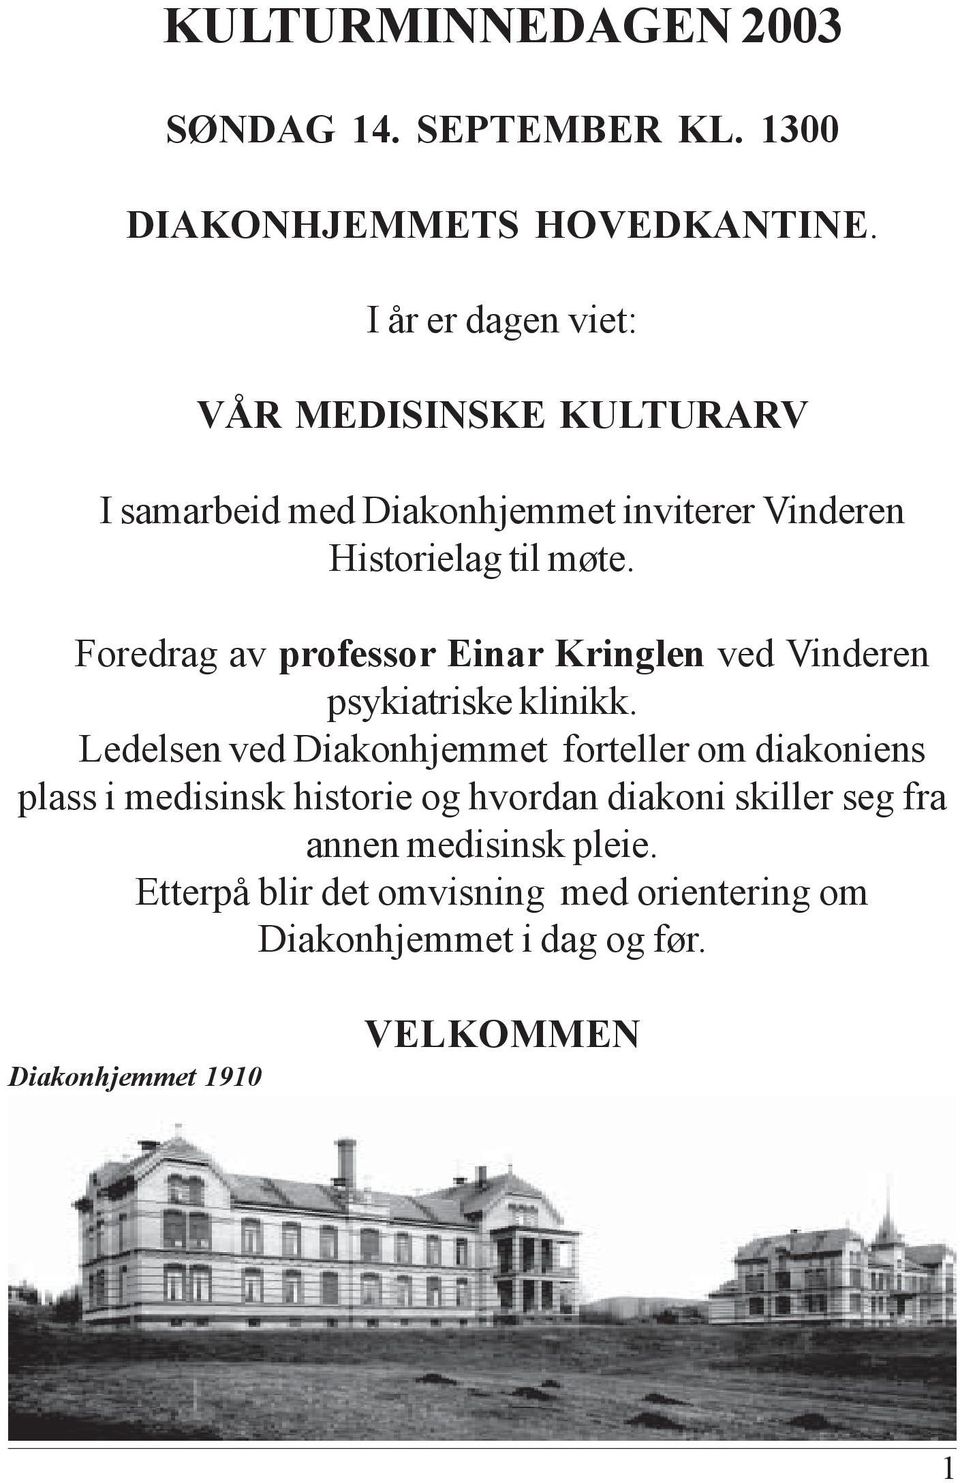 Foredrag av professor Einar Kringlen ved Vinderen psykiatriske klinikk.